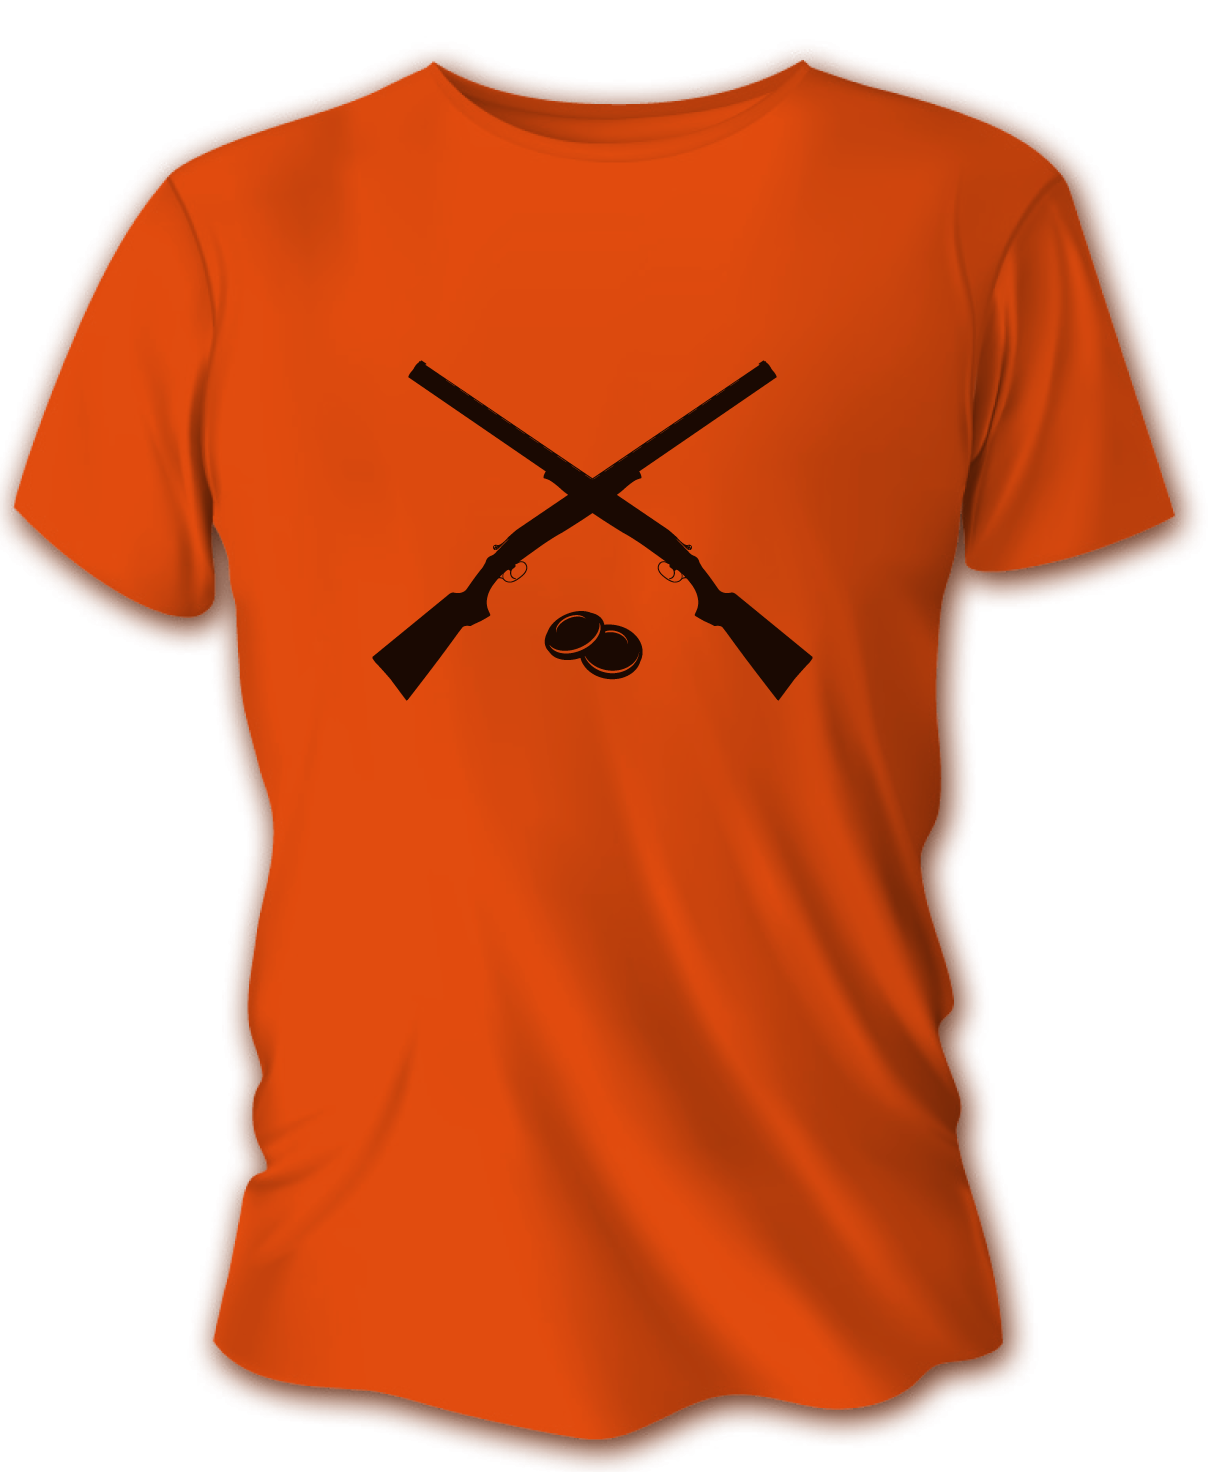 Pánske poľovnícke tričko TETRAO brokovnice - oranžové   L